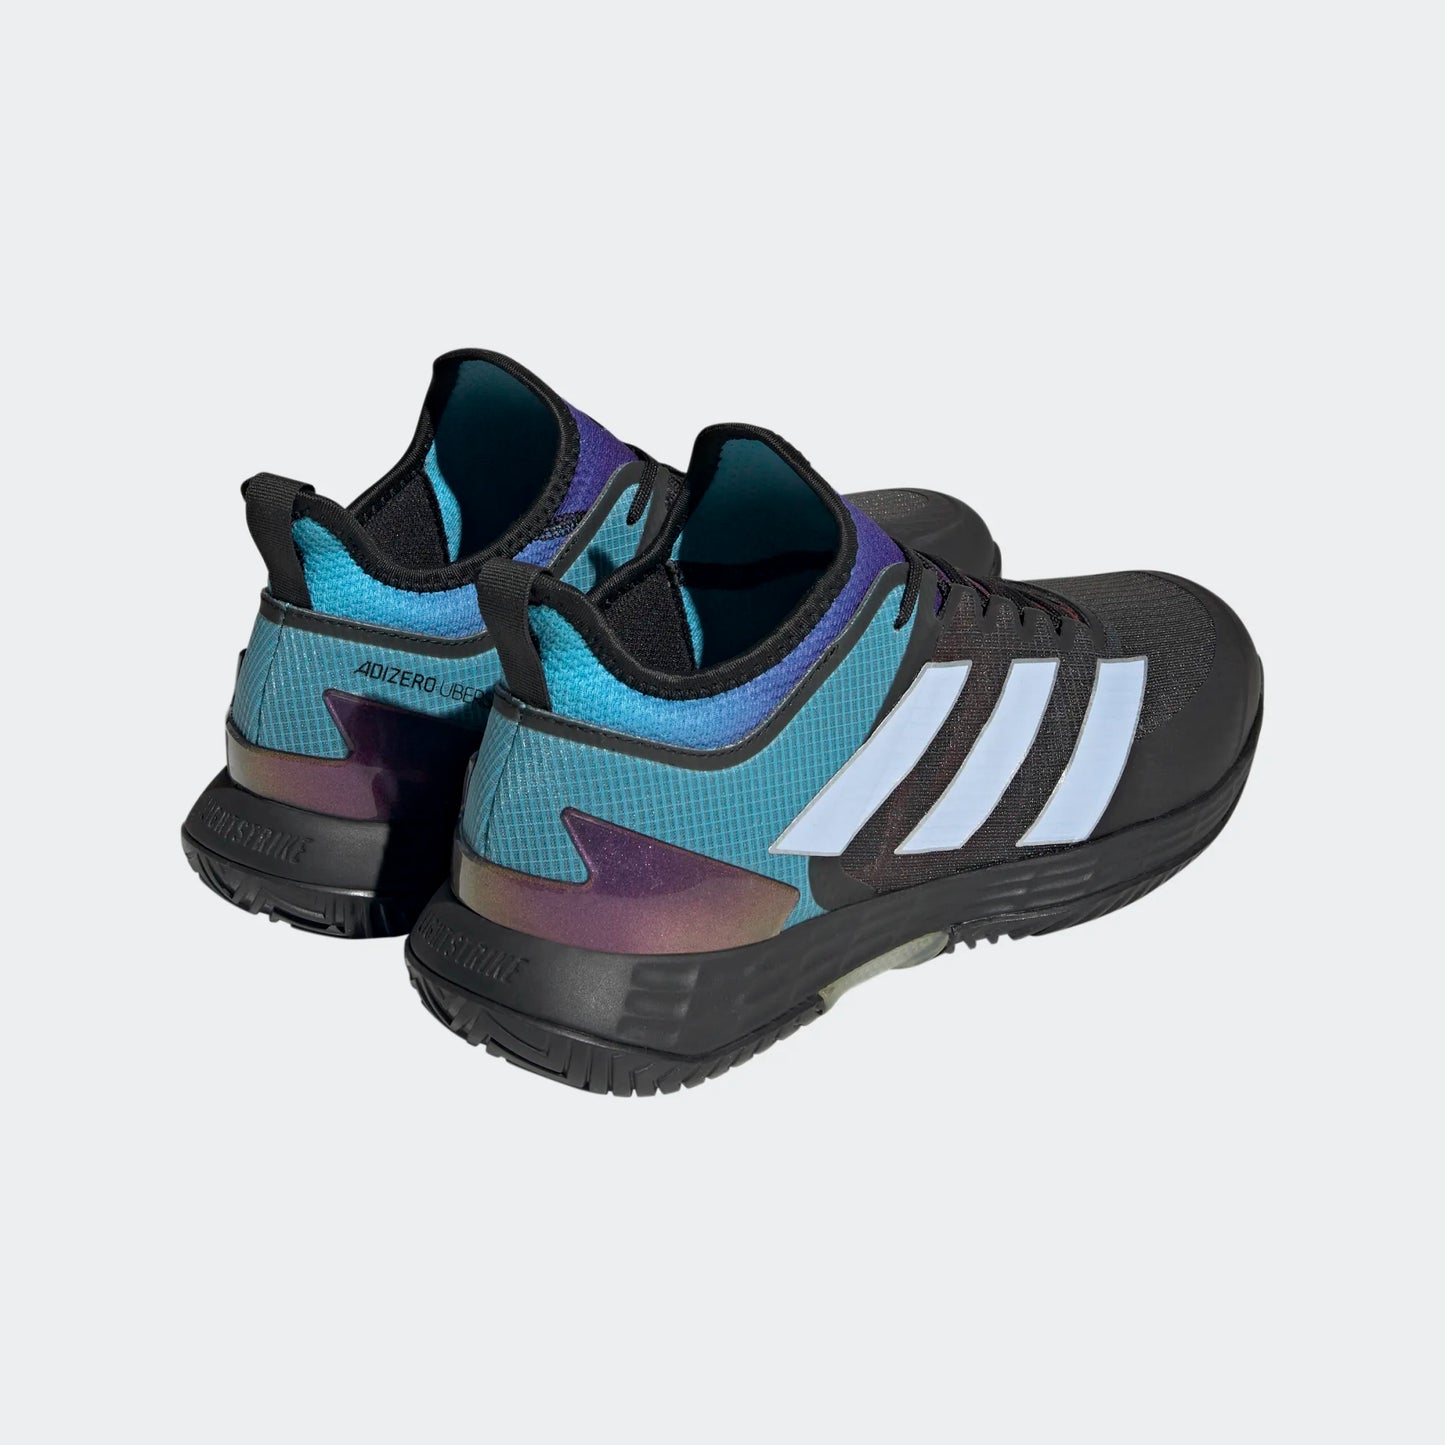 adidas Adizero Ubersonic 4 men tennis shoes - Grey/Blue/Black HQ8381